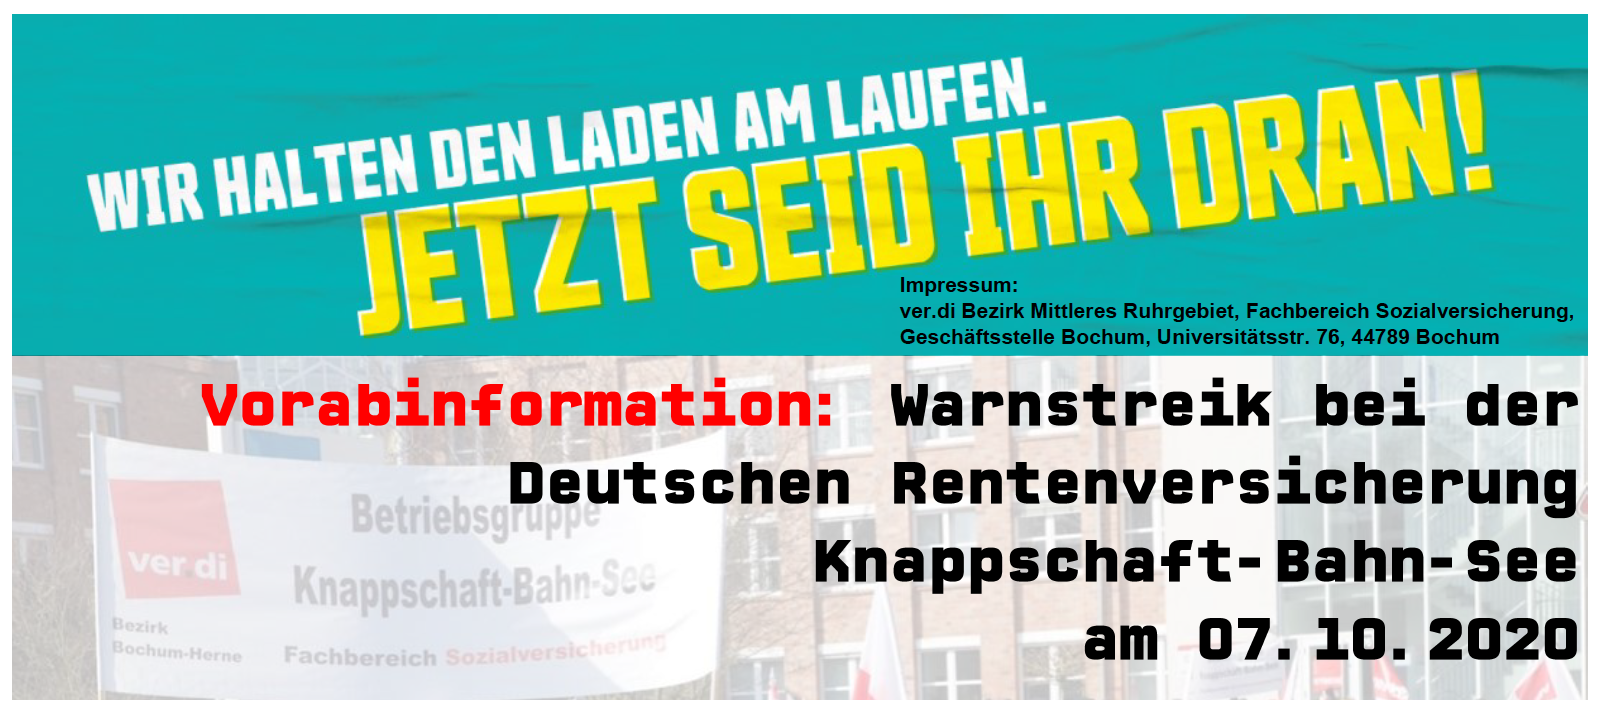 Vorabinformation: Warnstreik bei der Deutschen Rentenversicherung Knappschaft-Bahn-See am 07.10.2020